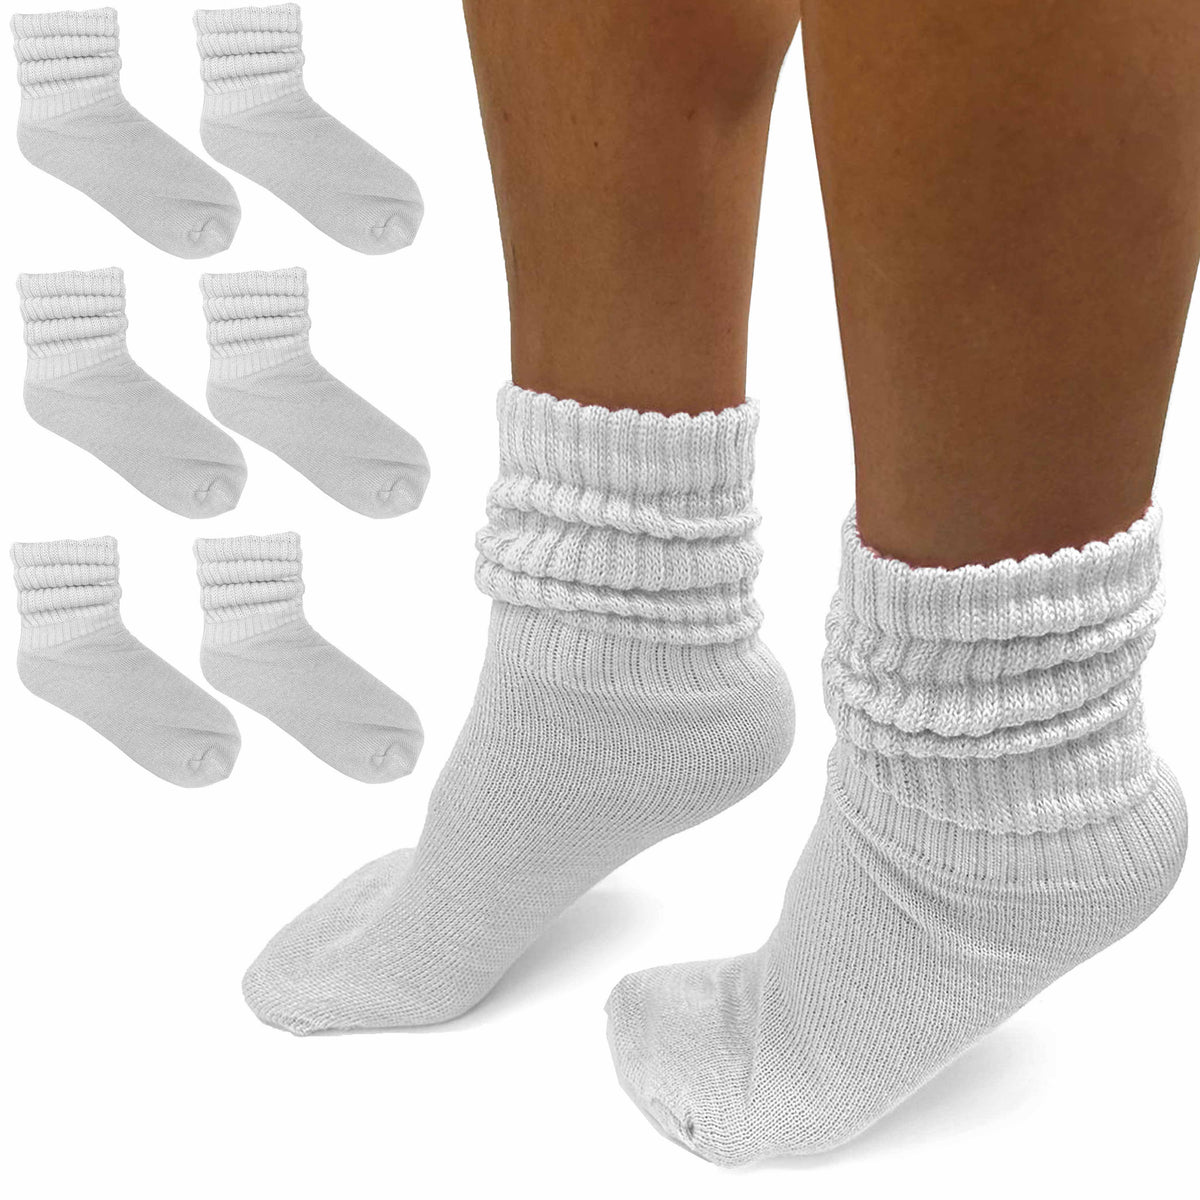 Jeyiour 8 Pair Slouch Socks Bulk for Women Men Slouchy Socks Pack